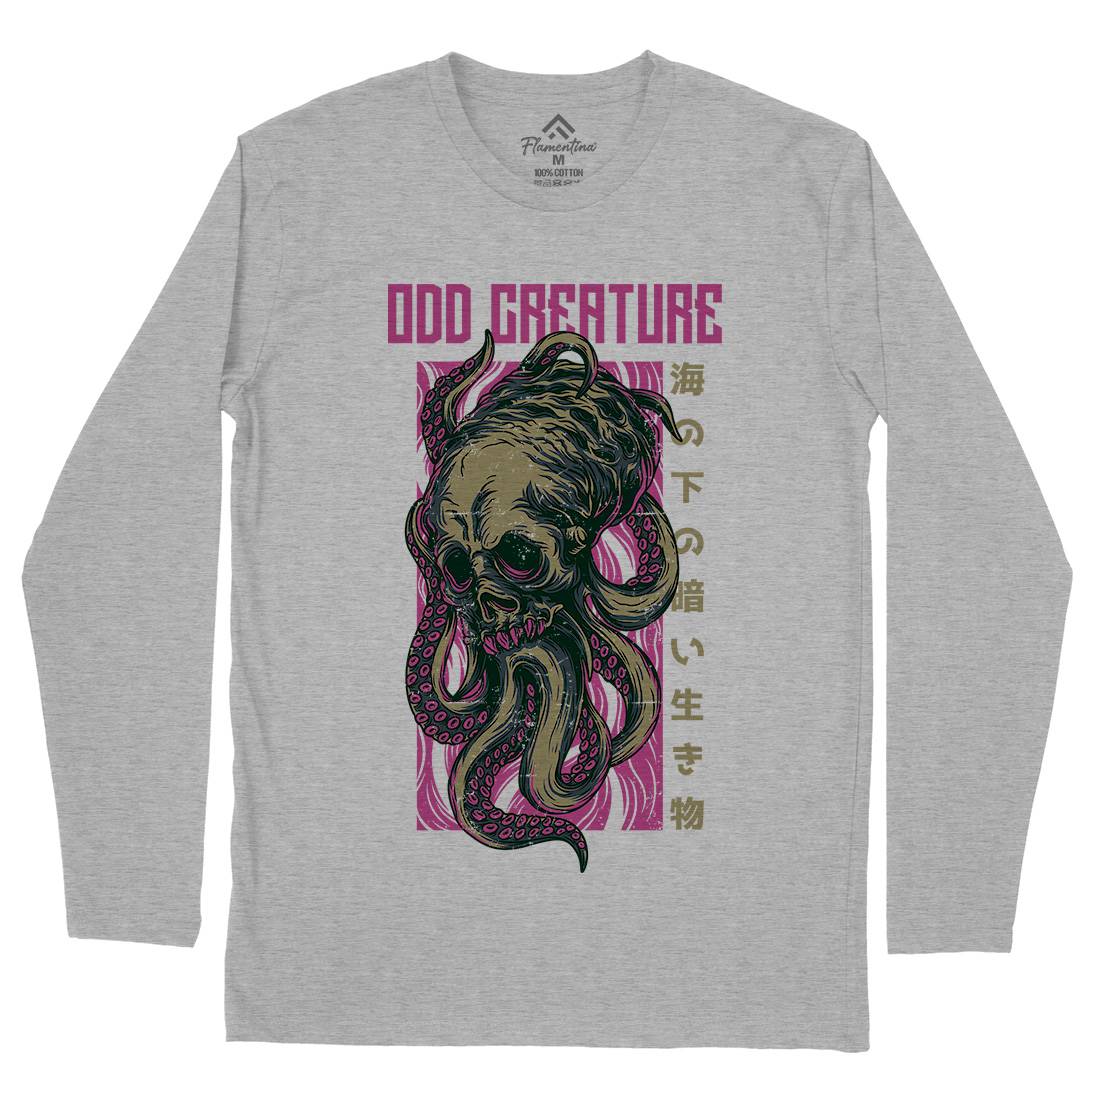 Octopus Mens Long Sleeve T-Shirt Navy D670